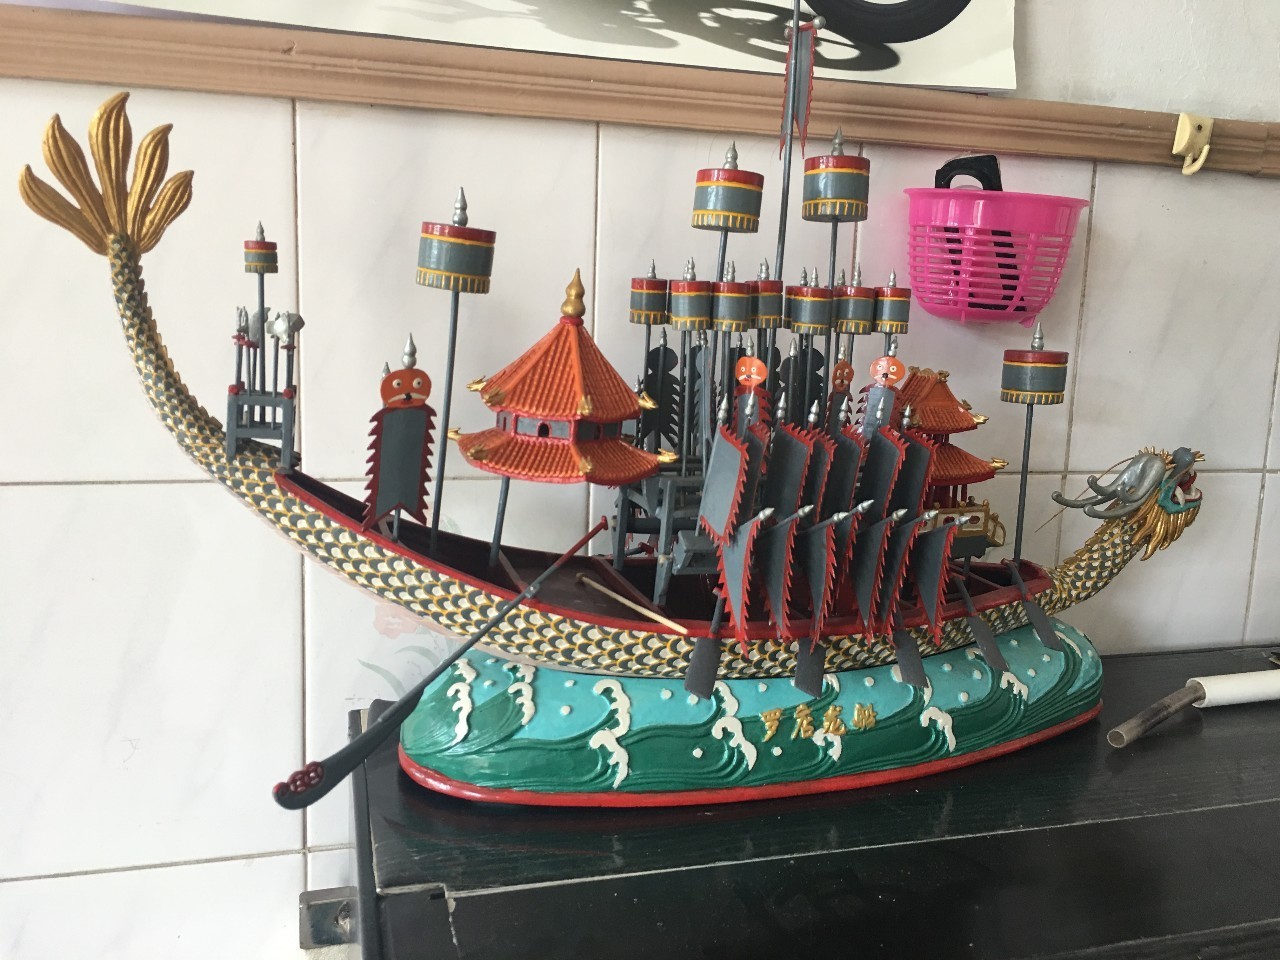 的"罗店龙舟" 但张福成老先生还是向我们展示了等比例制作的手工龙舟